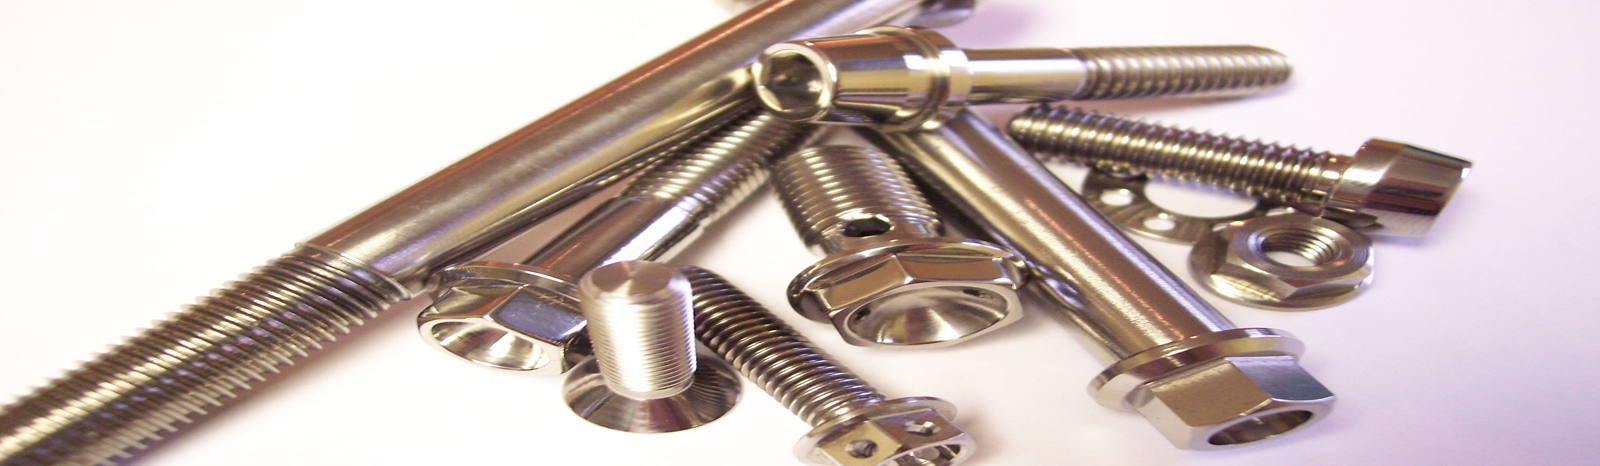 titanium fasteners manufacturer exporter suppliers